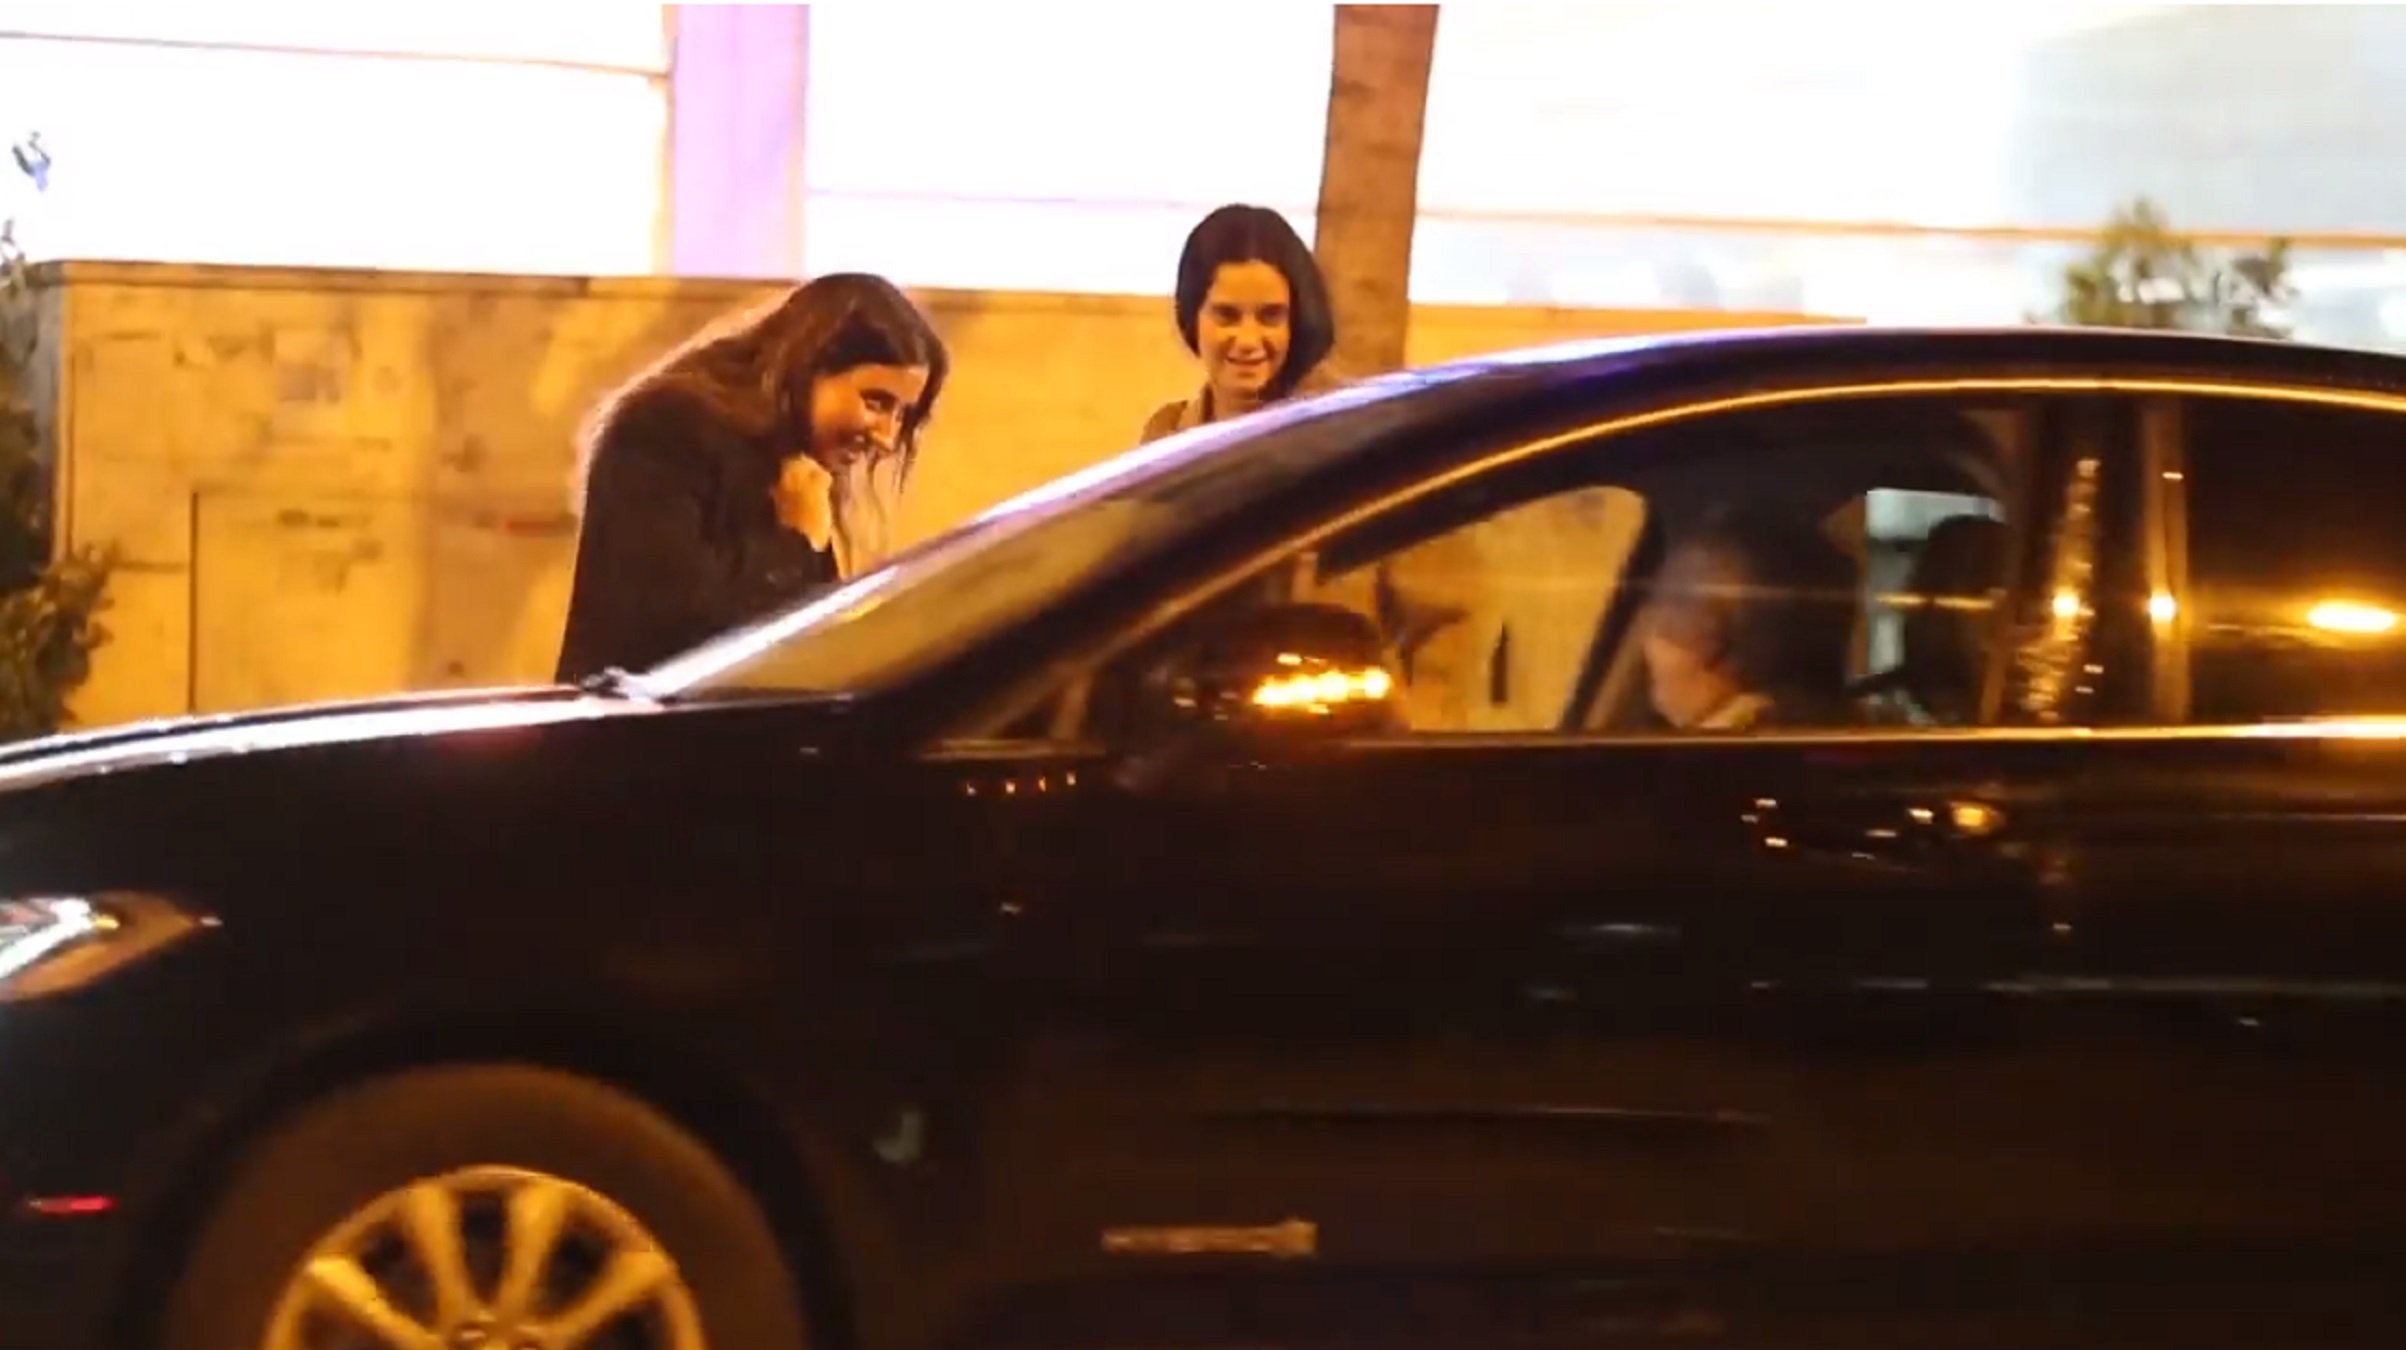 VÍDEO Victoria Federica, macarra contra un conductor: "¡Me has dao, gilipollas!"